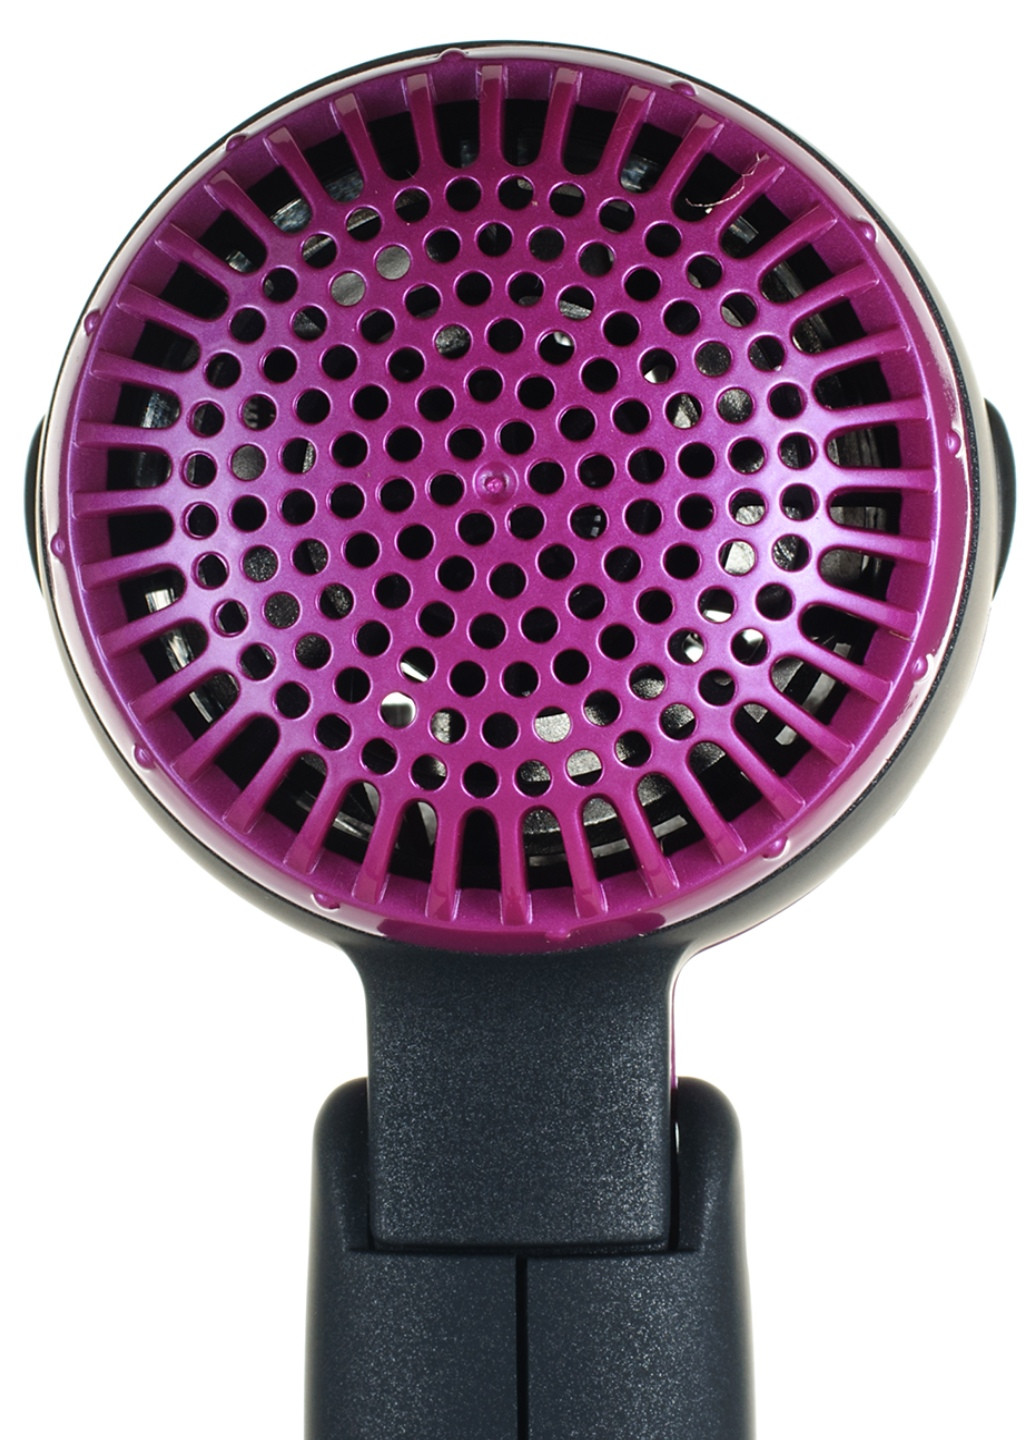 Фен электрический для сушки и укладки волос 220 В; арт.VHD-1809FH; т.м. Vilgrand vhd-1809fh_purple (197140487)